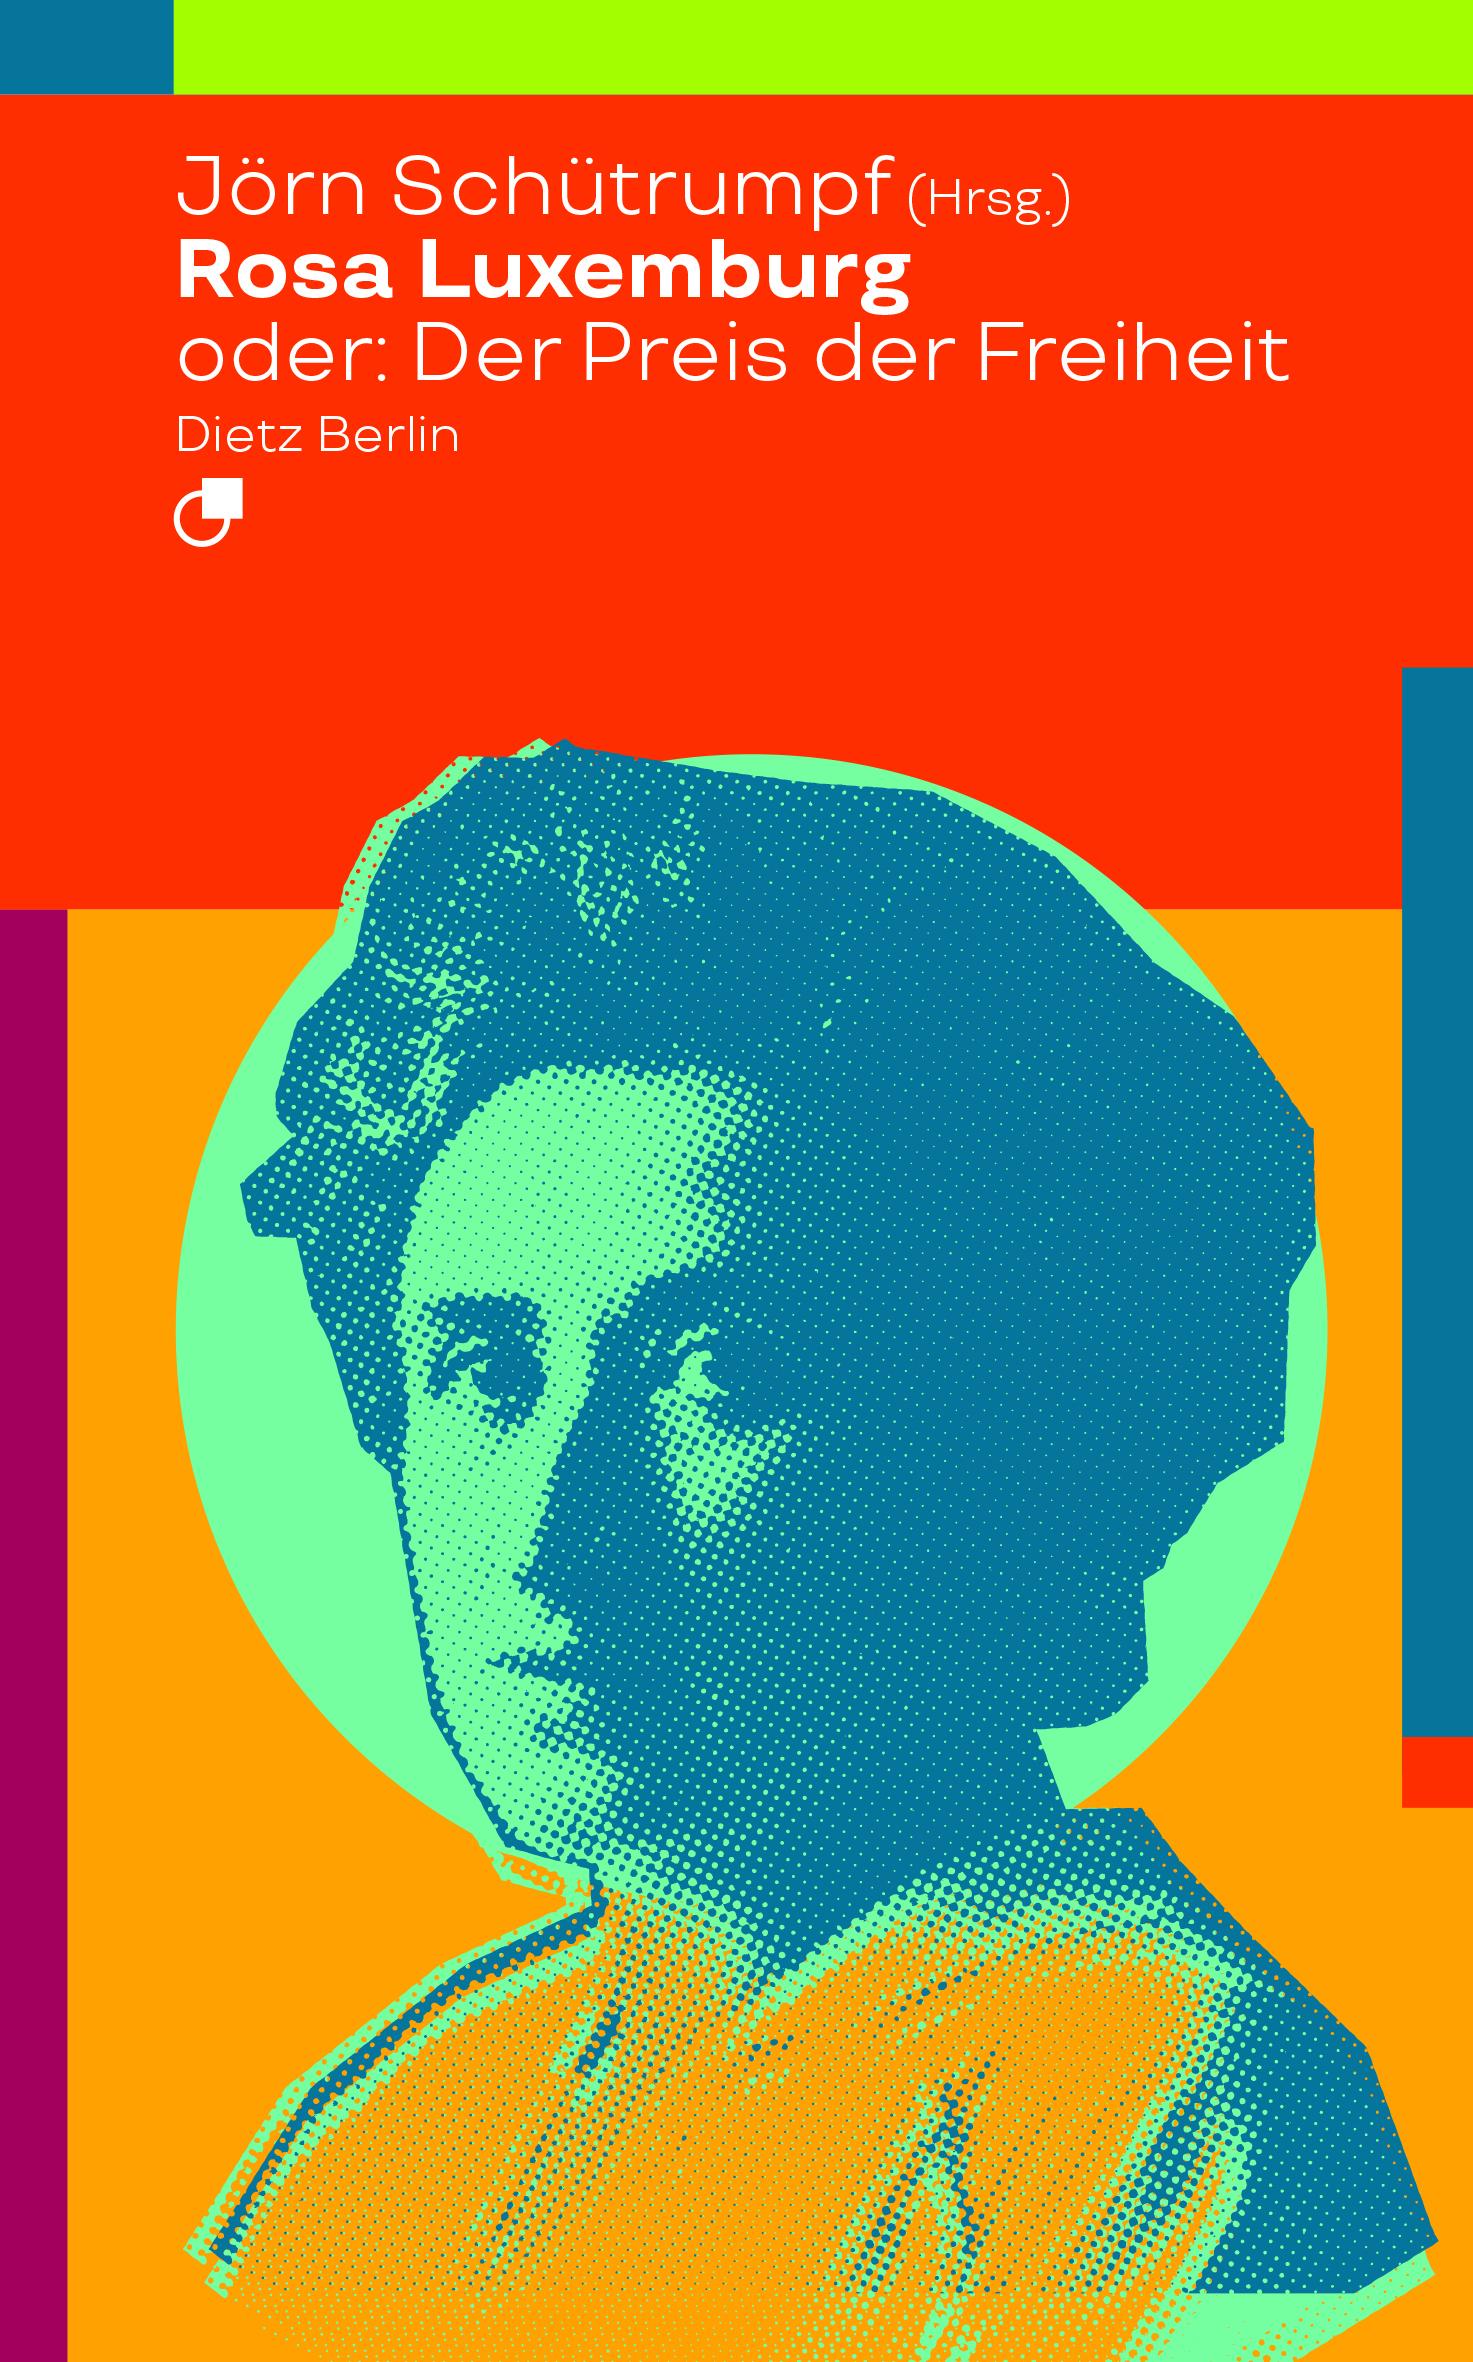 Rosa Luxemburg oder: Der Preis der Freiheit | Jörn Schütrumpf | Taschenbuch | Historische Miniaturen | 190 S. | Deutsch | 2018 | Dietz Verlag Berlin GmbH | EAN 9783320023515 - Schütrumpf, Jörn